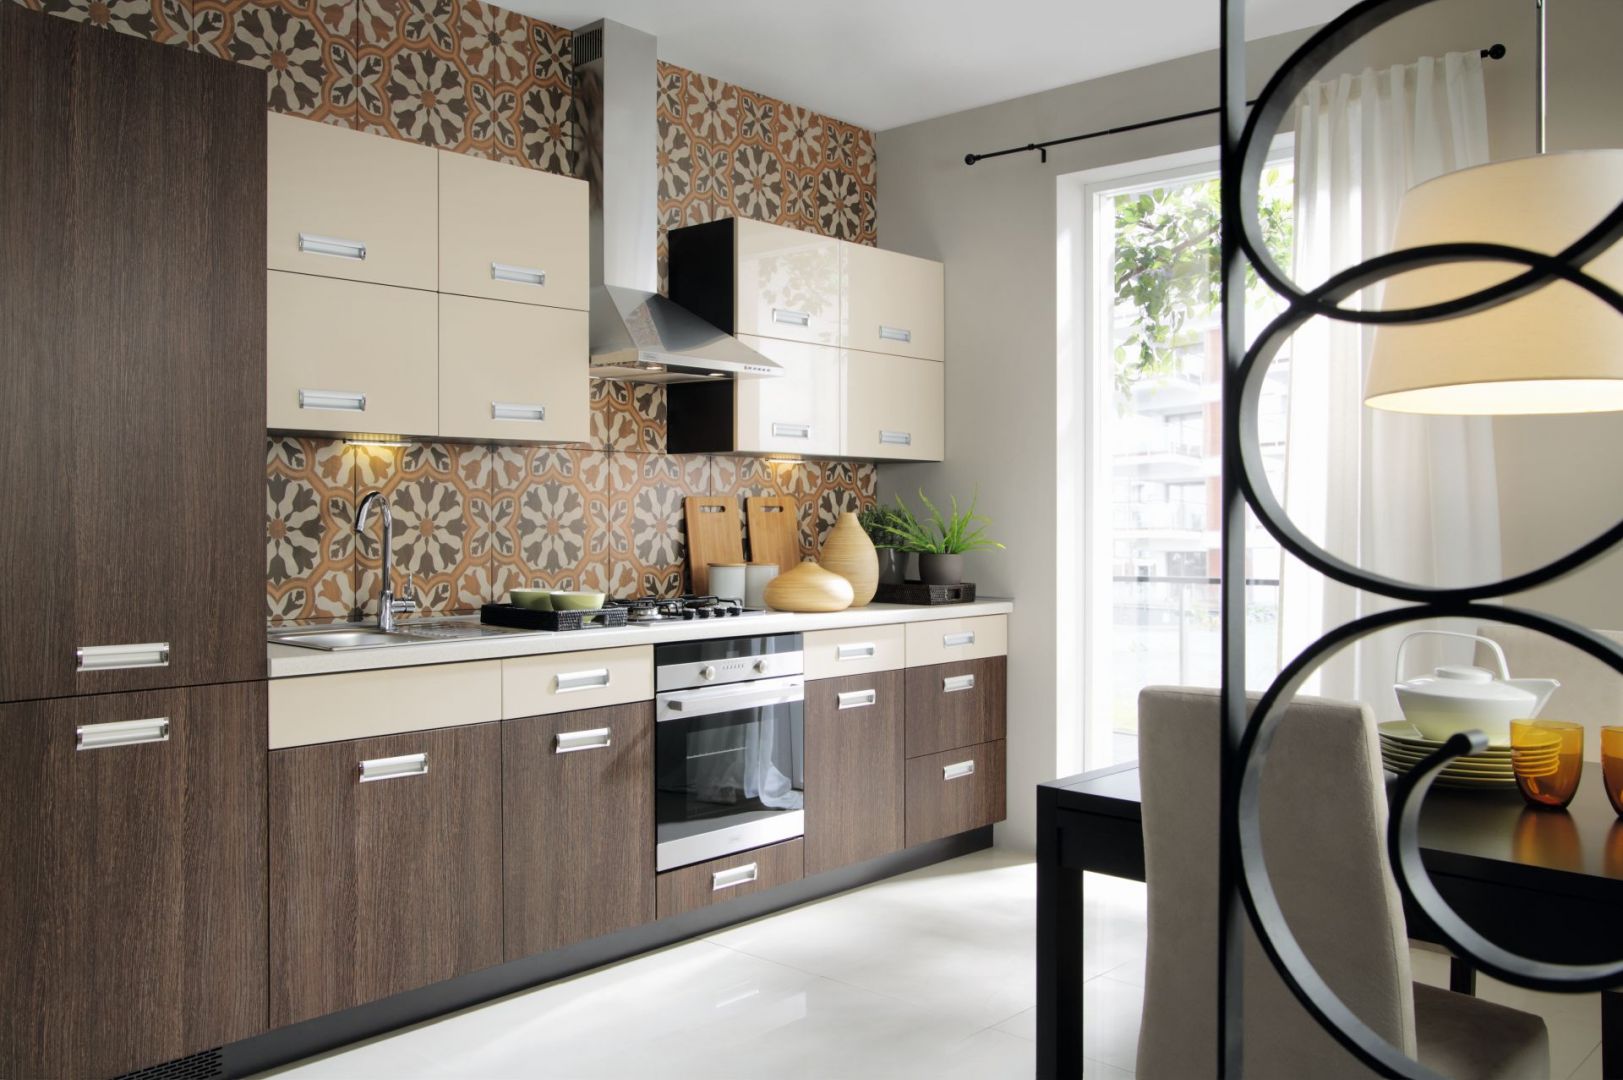 Aneks kuchenny to dobre rozwiązanie do mieszkań, w których kuchnia jest otwarta na pokój dzienny. Fot. BRW